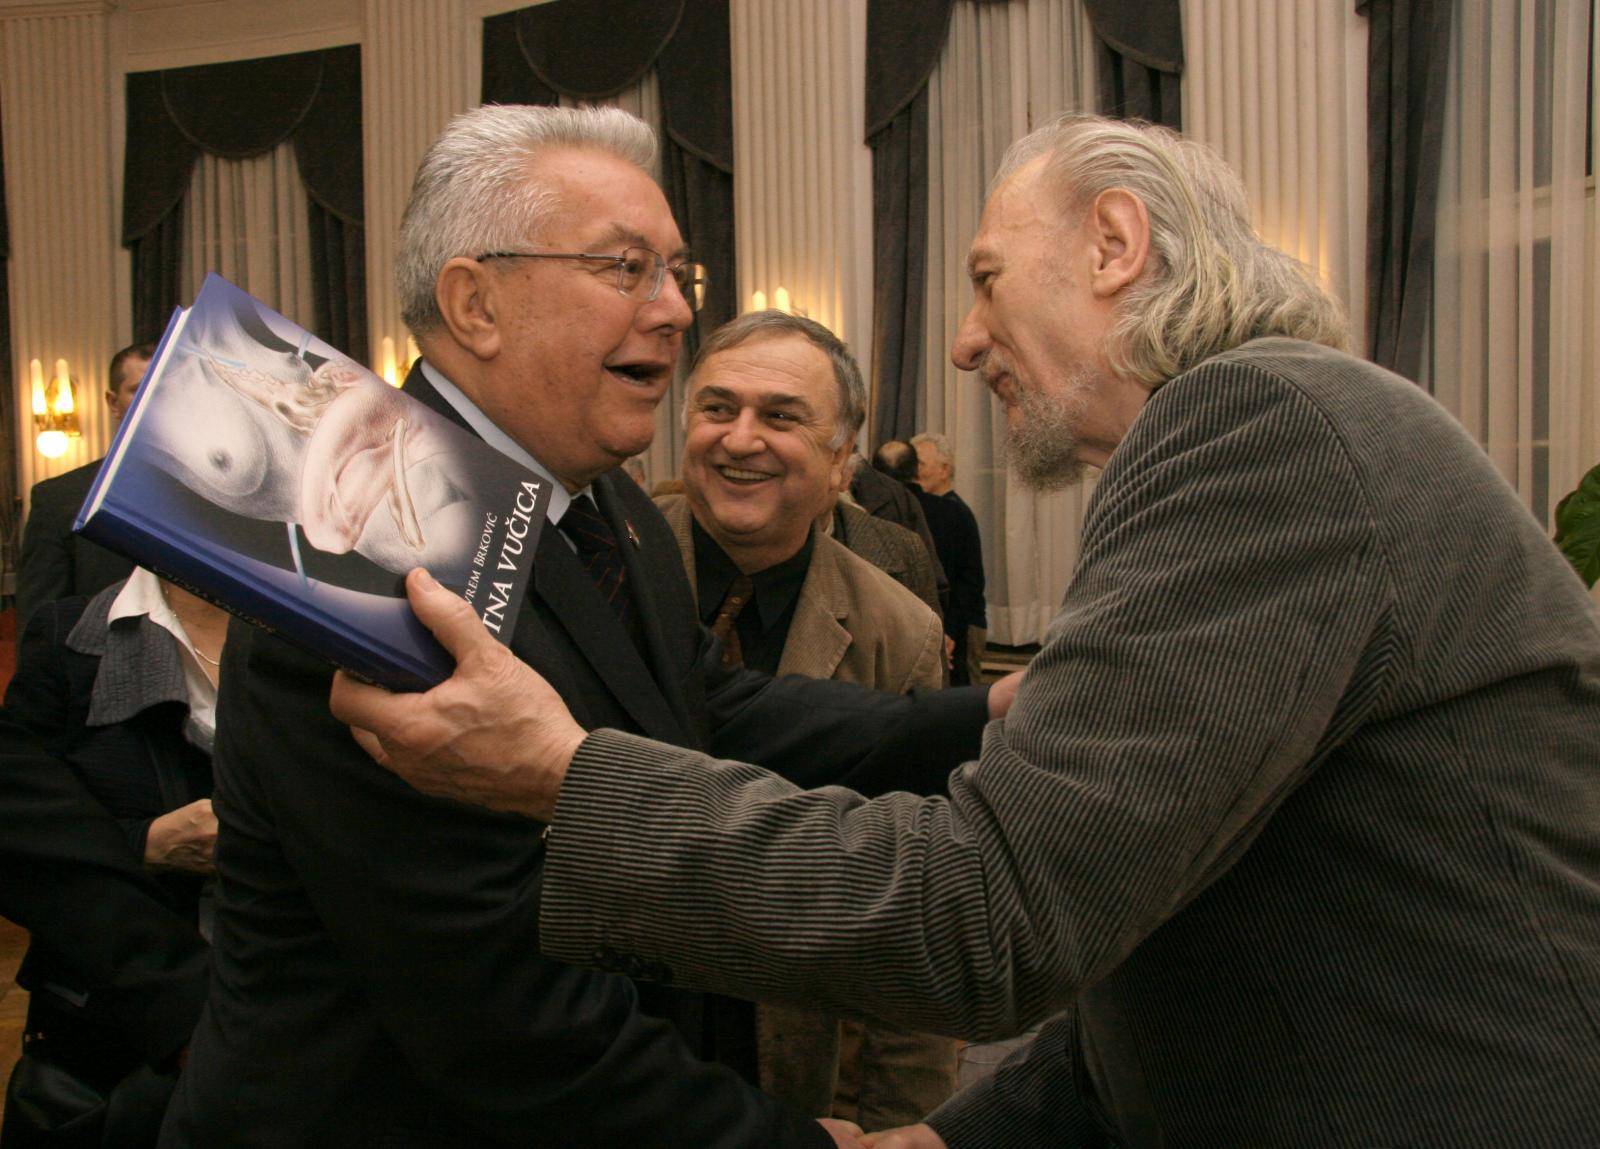 Preminuo je crnogorski pjesnik Jevrem Brković u 88. godini